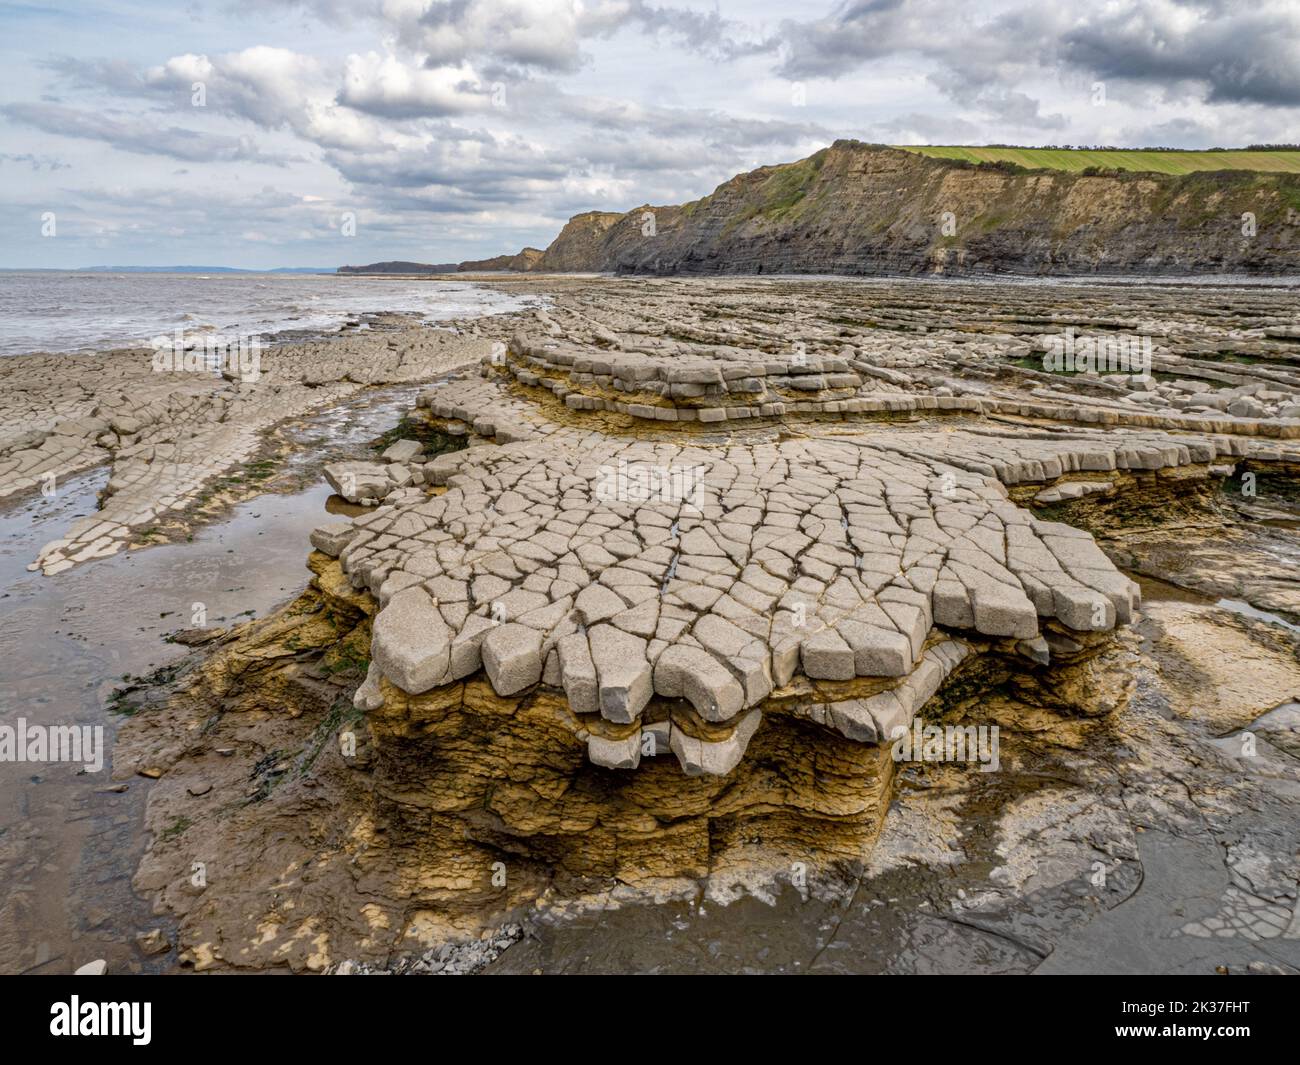 Erosión de la plataforma cortada por olas en los lechos de pizarra jurásica y de piedra caliza de Lias en Quantock's Head, en la costa británica de Somerset Foto de stock